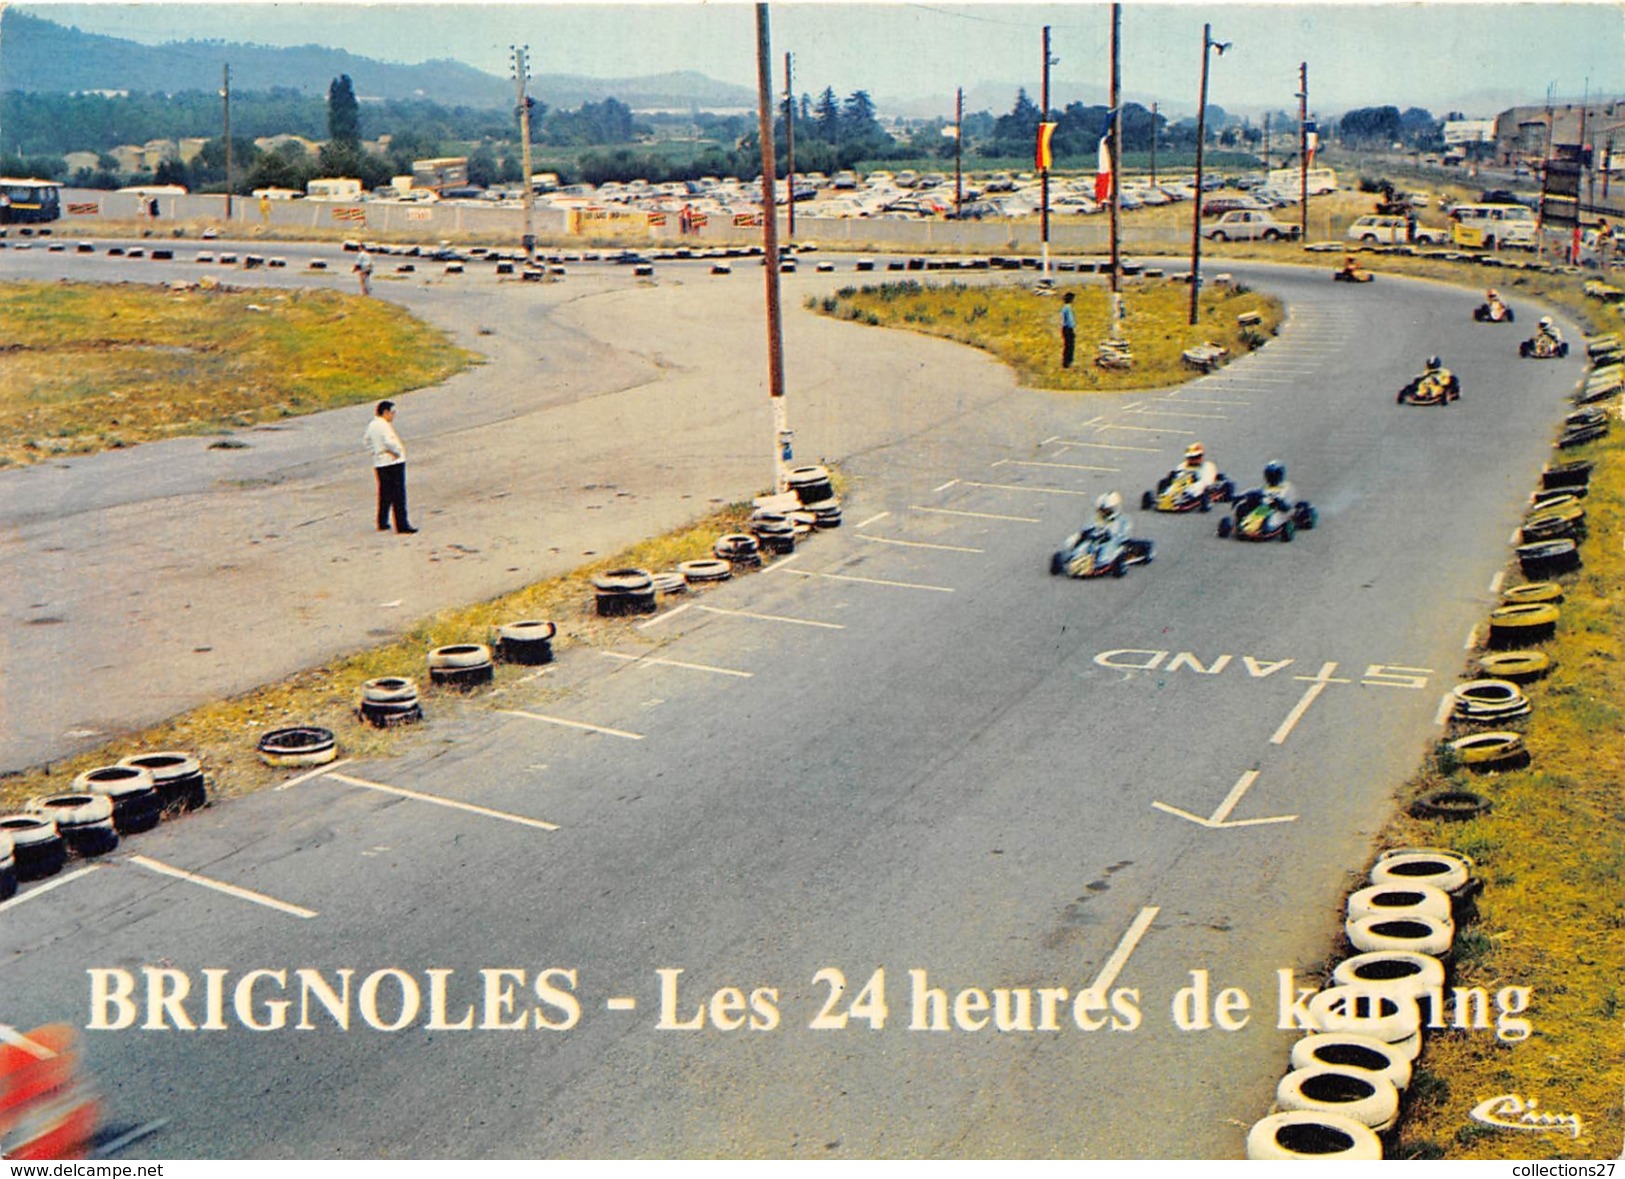 83-BRIGNOLES-LES 24 HEURES DE CHAMPIONNATS DE KARTING - Brignoles